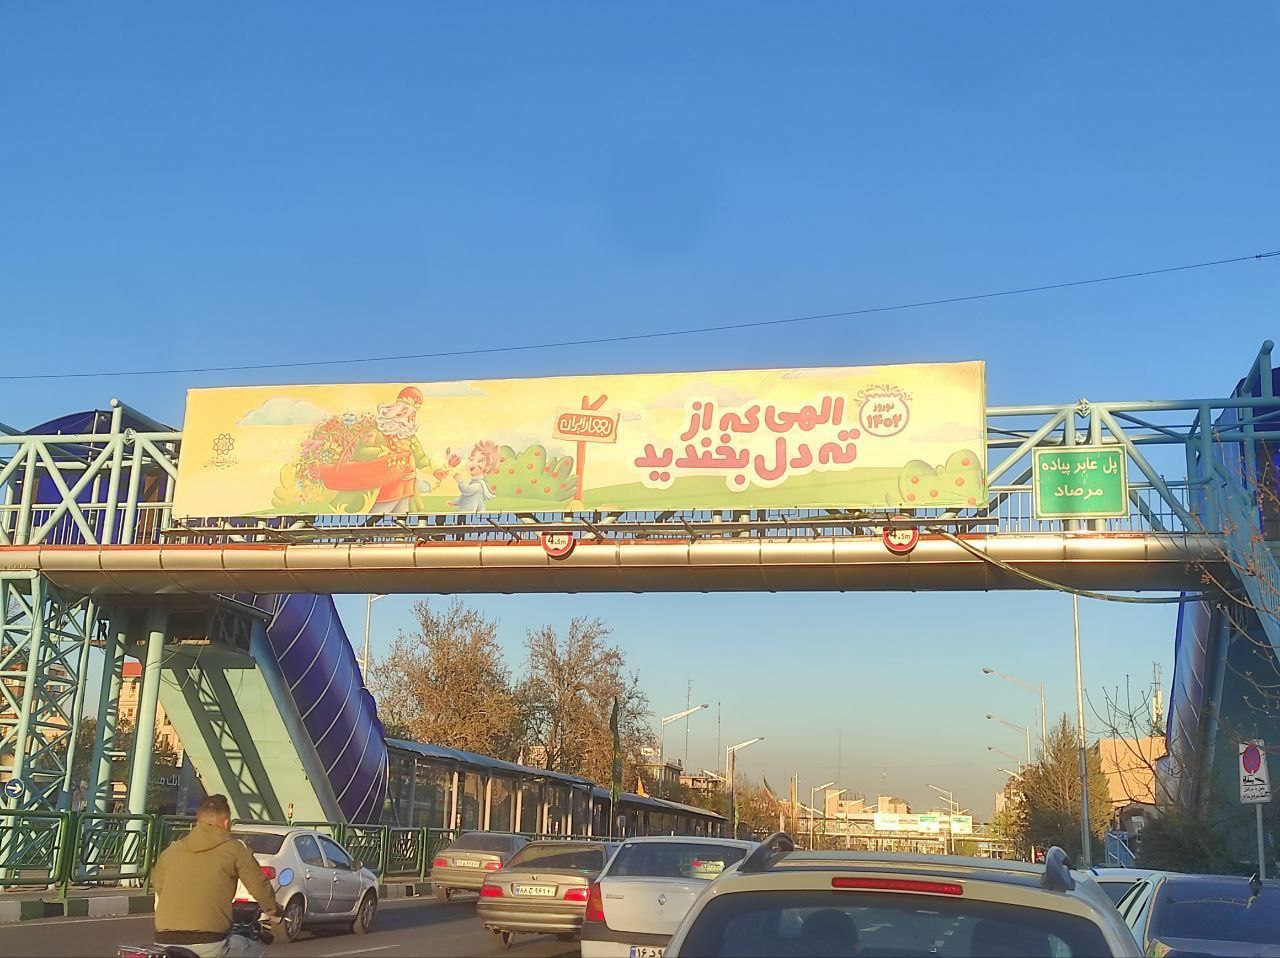 بنرهای تبریک سال نو در تهران خبرساز شد